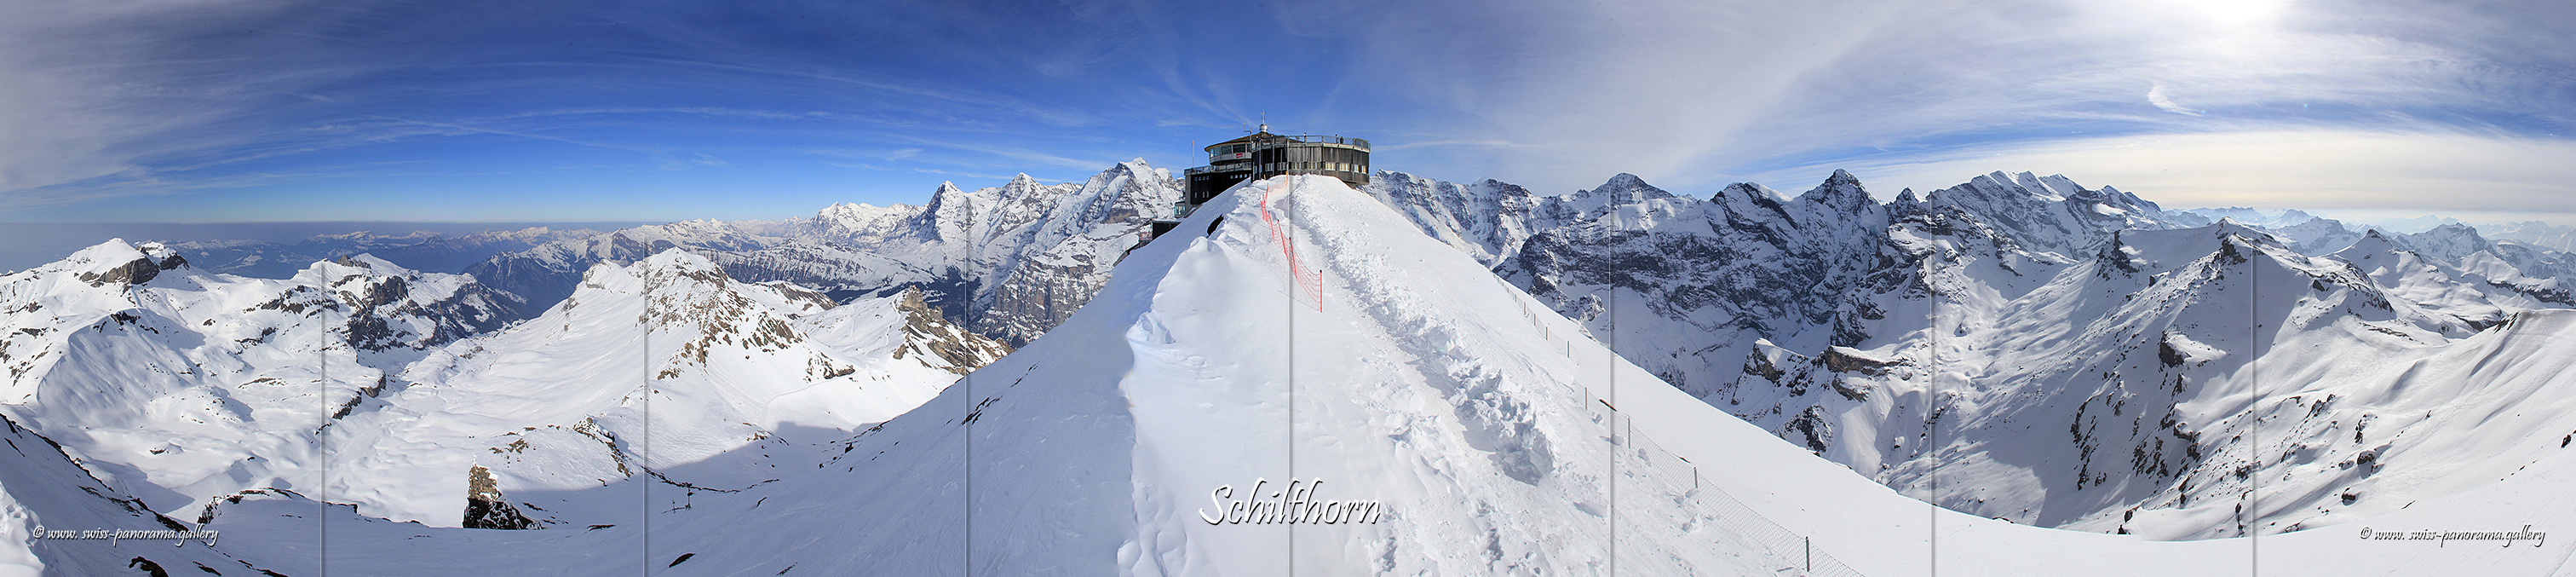 Schilthorn 360 Grad Panorama Schilthorn Piz Gloria 360 degree panoramas with identified peaks Alpenpanorama